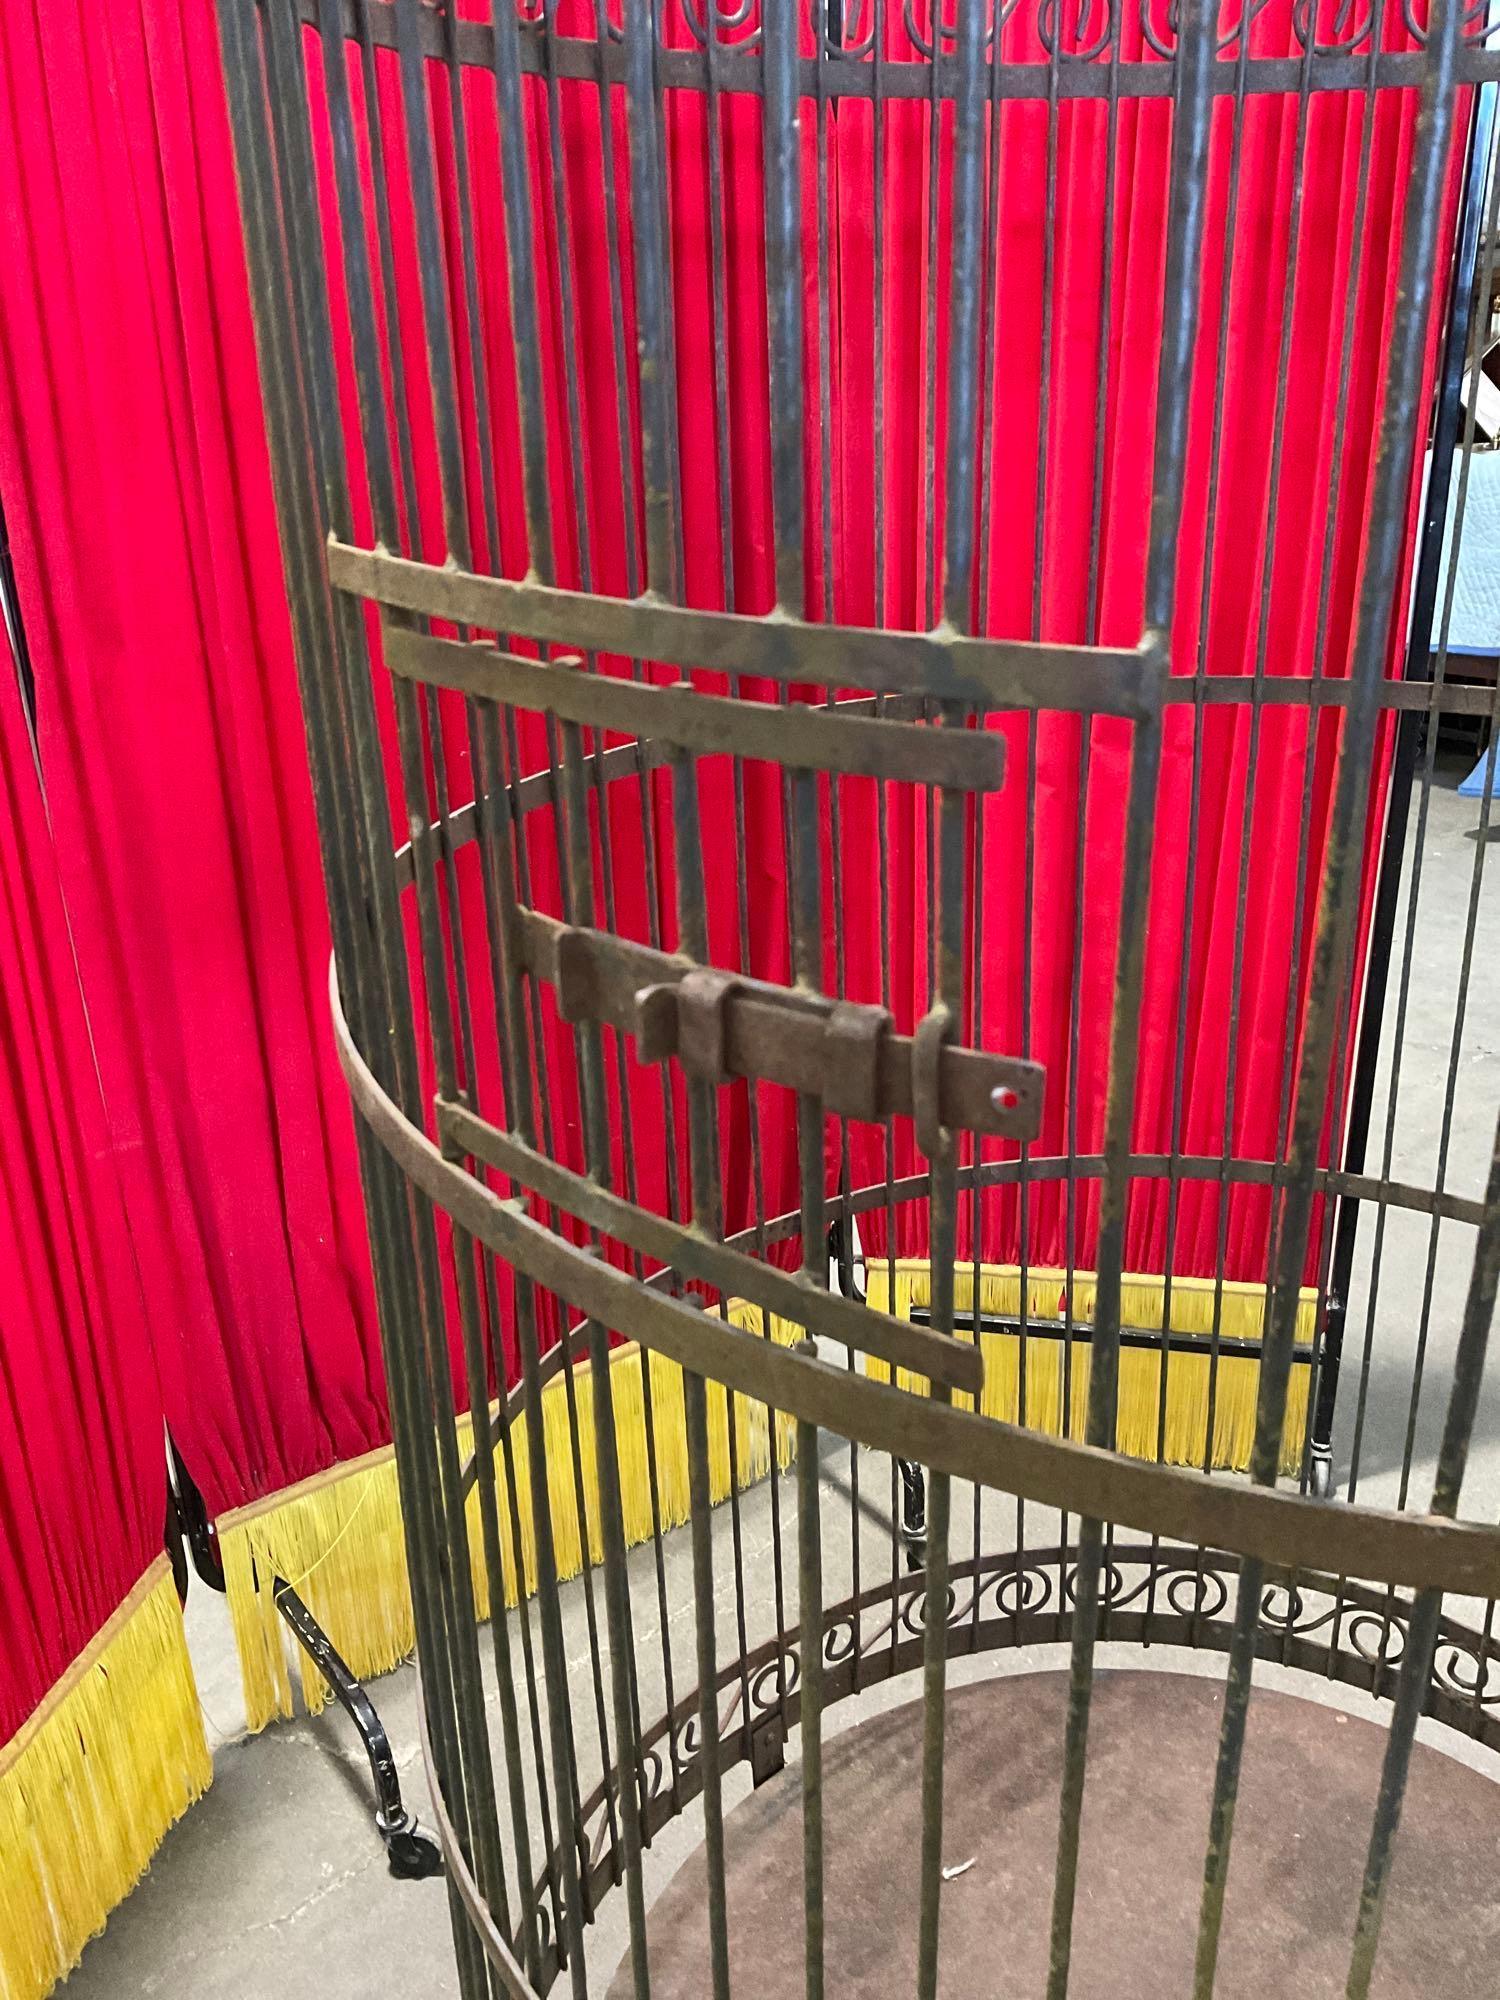 Large circular metal freestanding bird cage w/slide out bottom